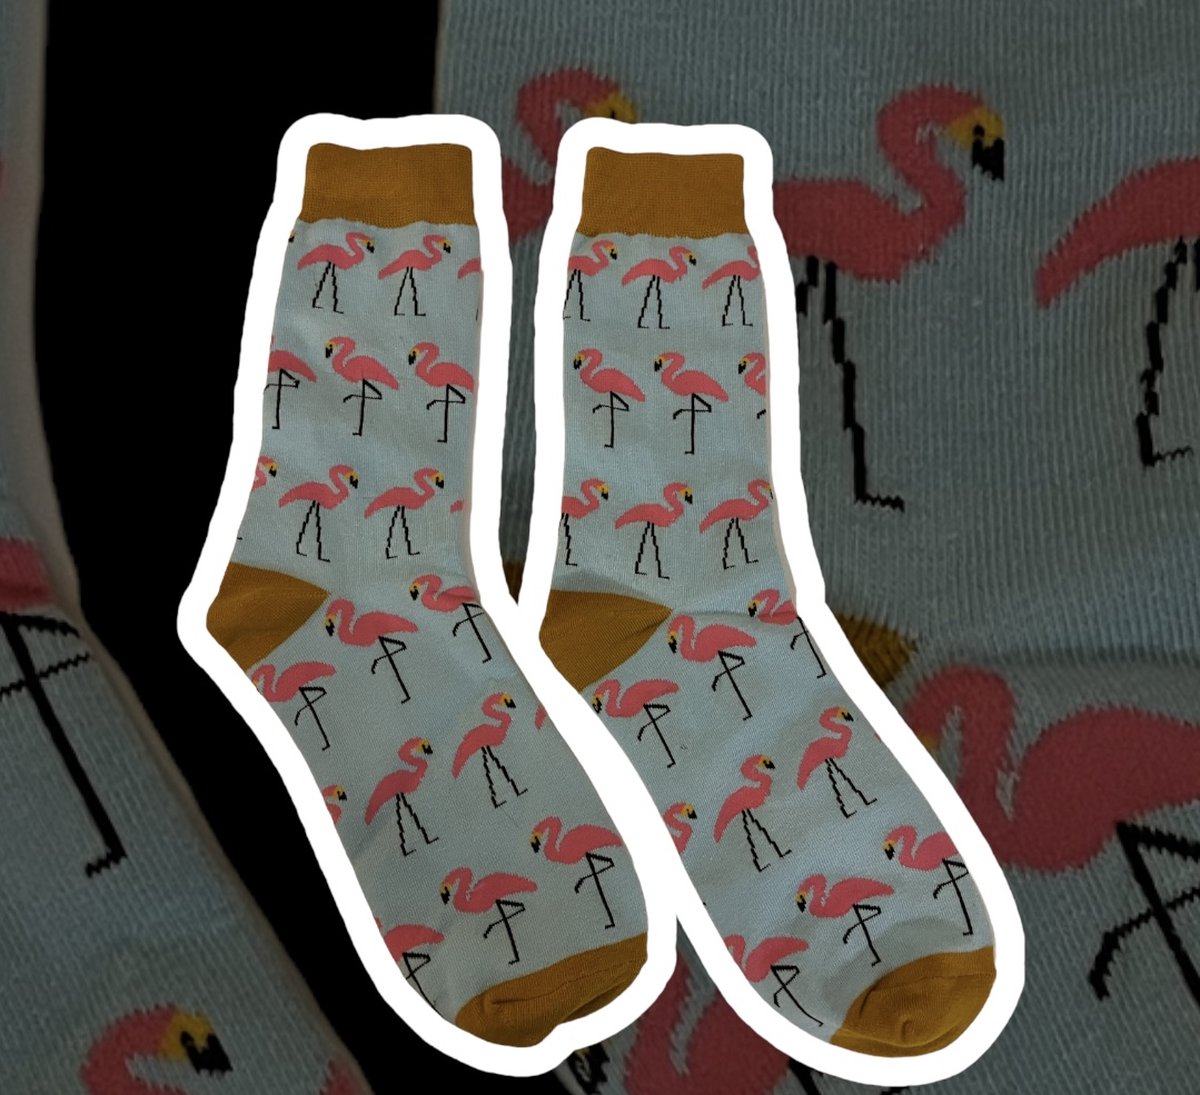 Sokken (kleurrijk met flamingo print).